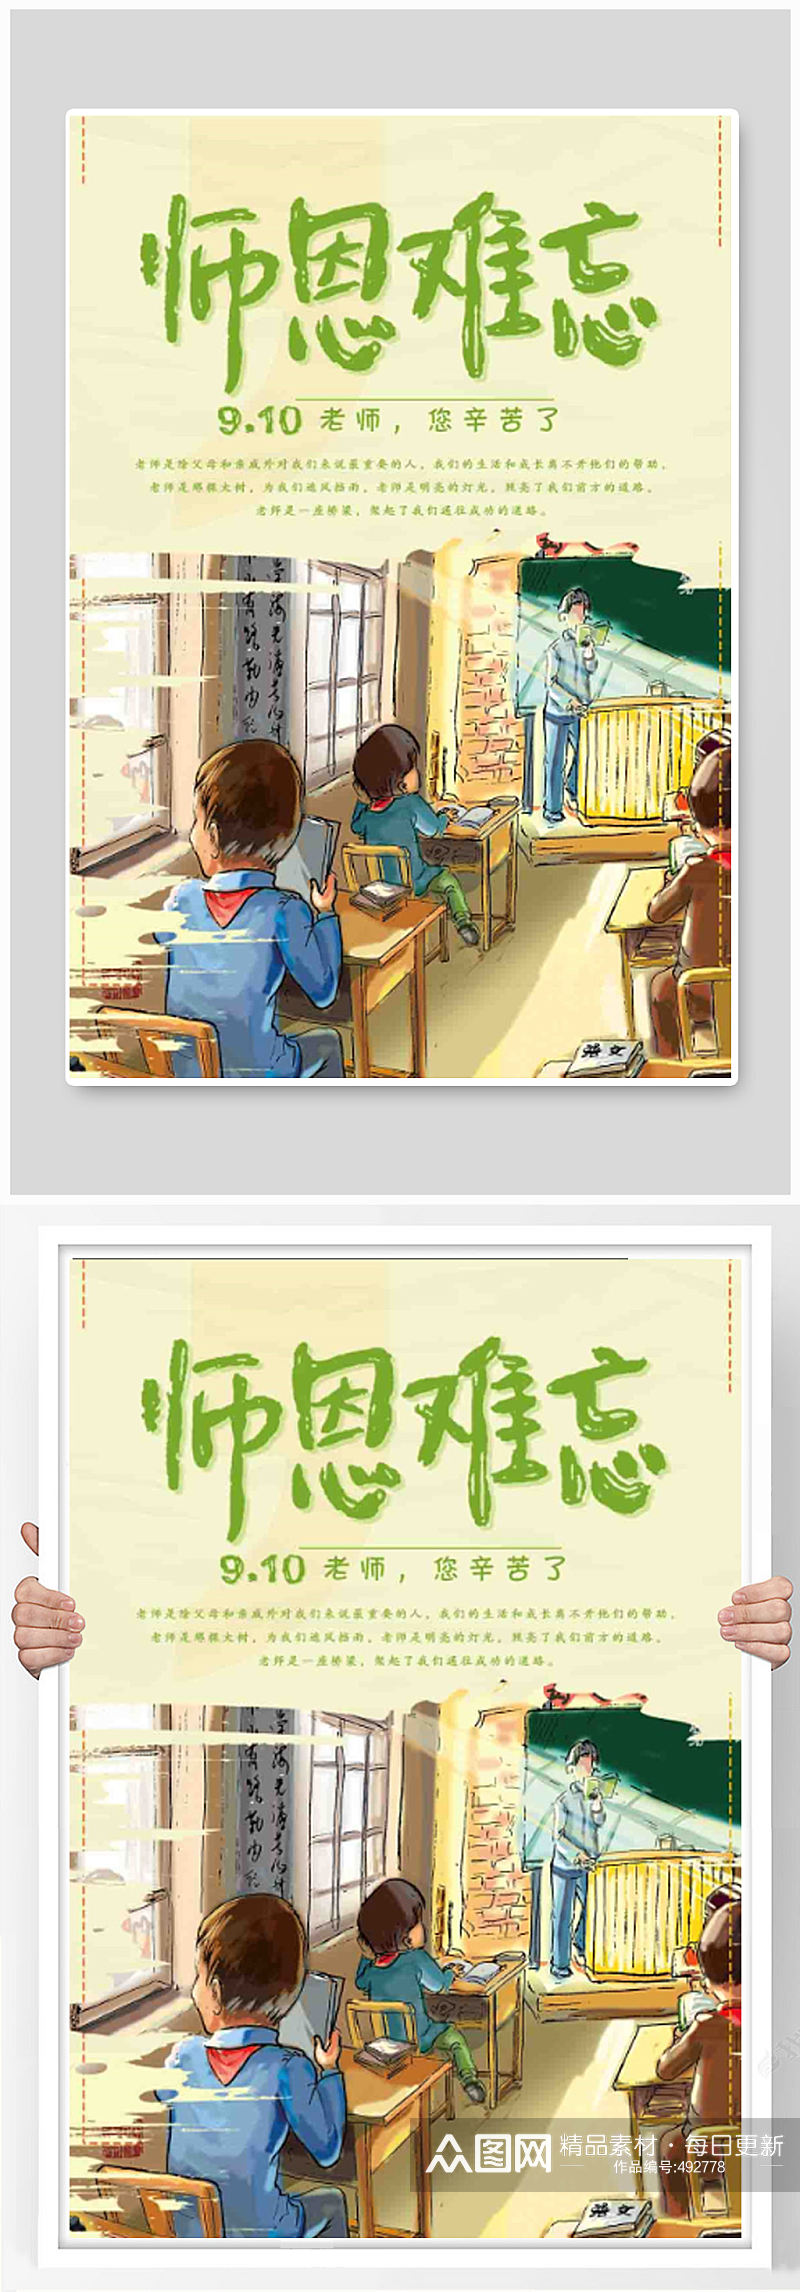 教师节感恩插画宣传海报素材